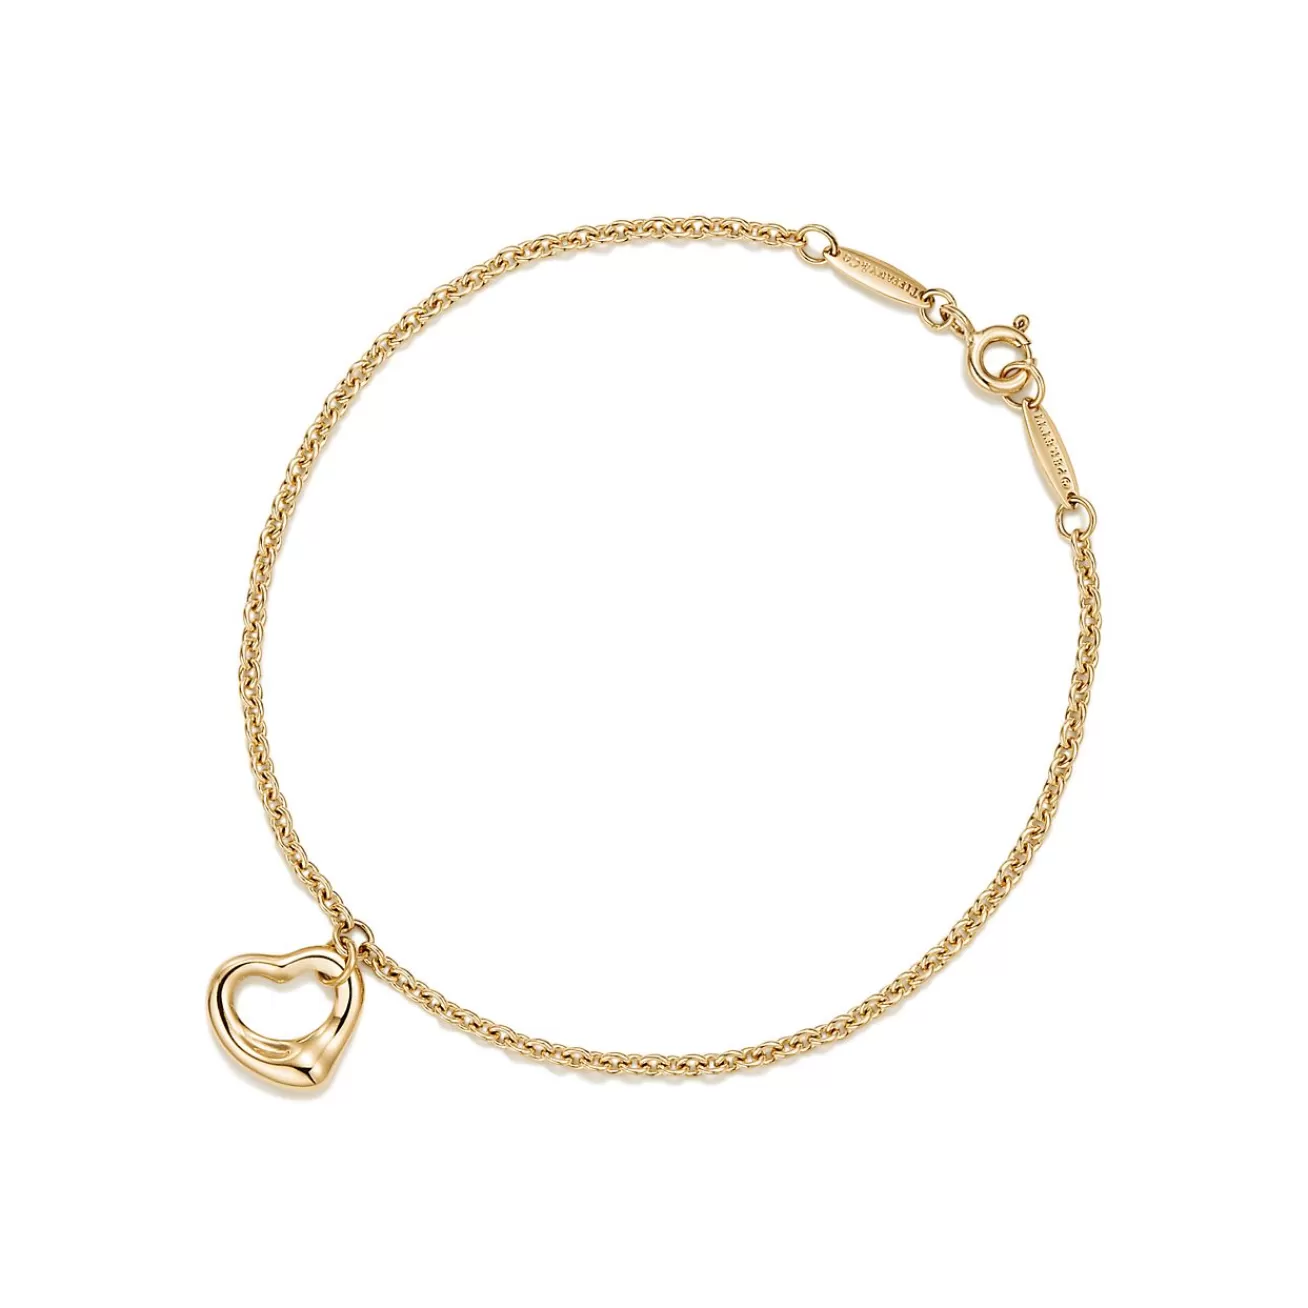 Tiffany & Co. Elsa Peretti® Open Heart Bracelet in Yellow Gold, 11 mm | ^ Bracelets | Gifts for Her